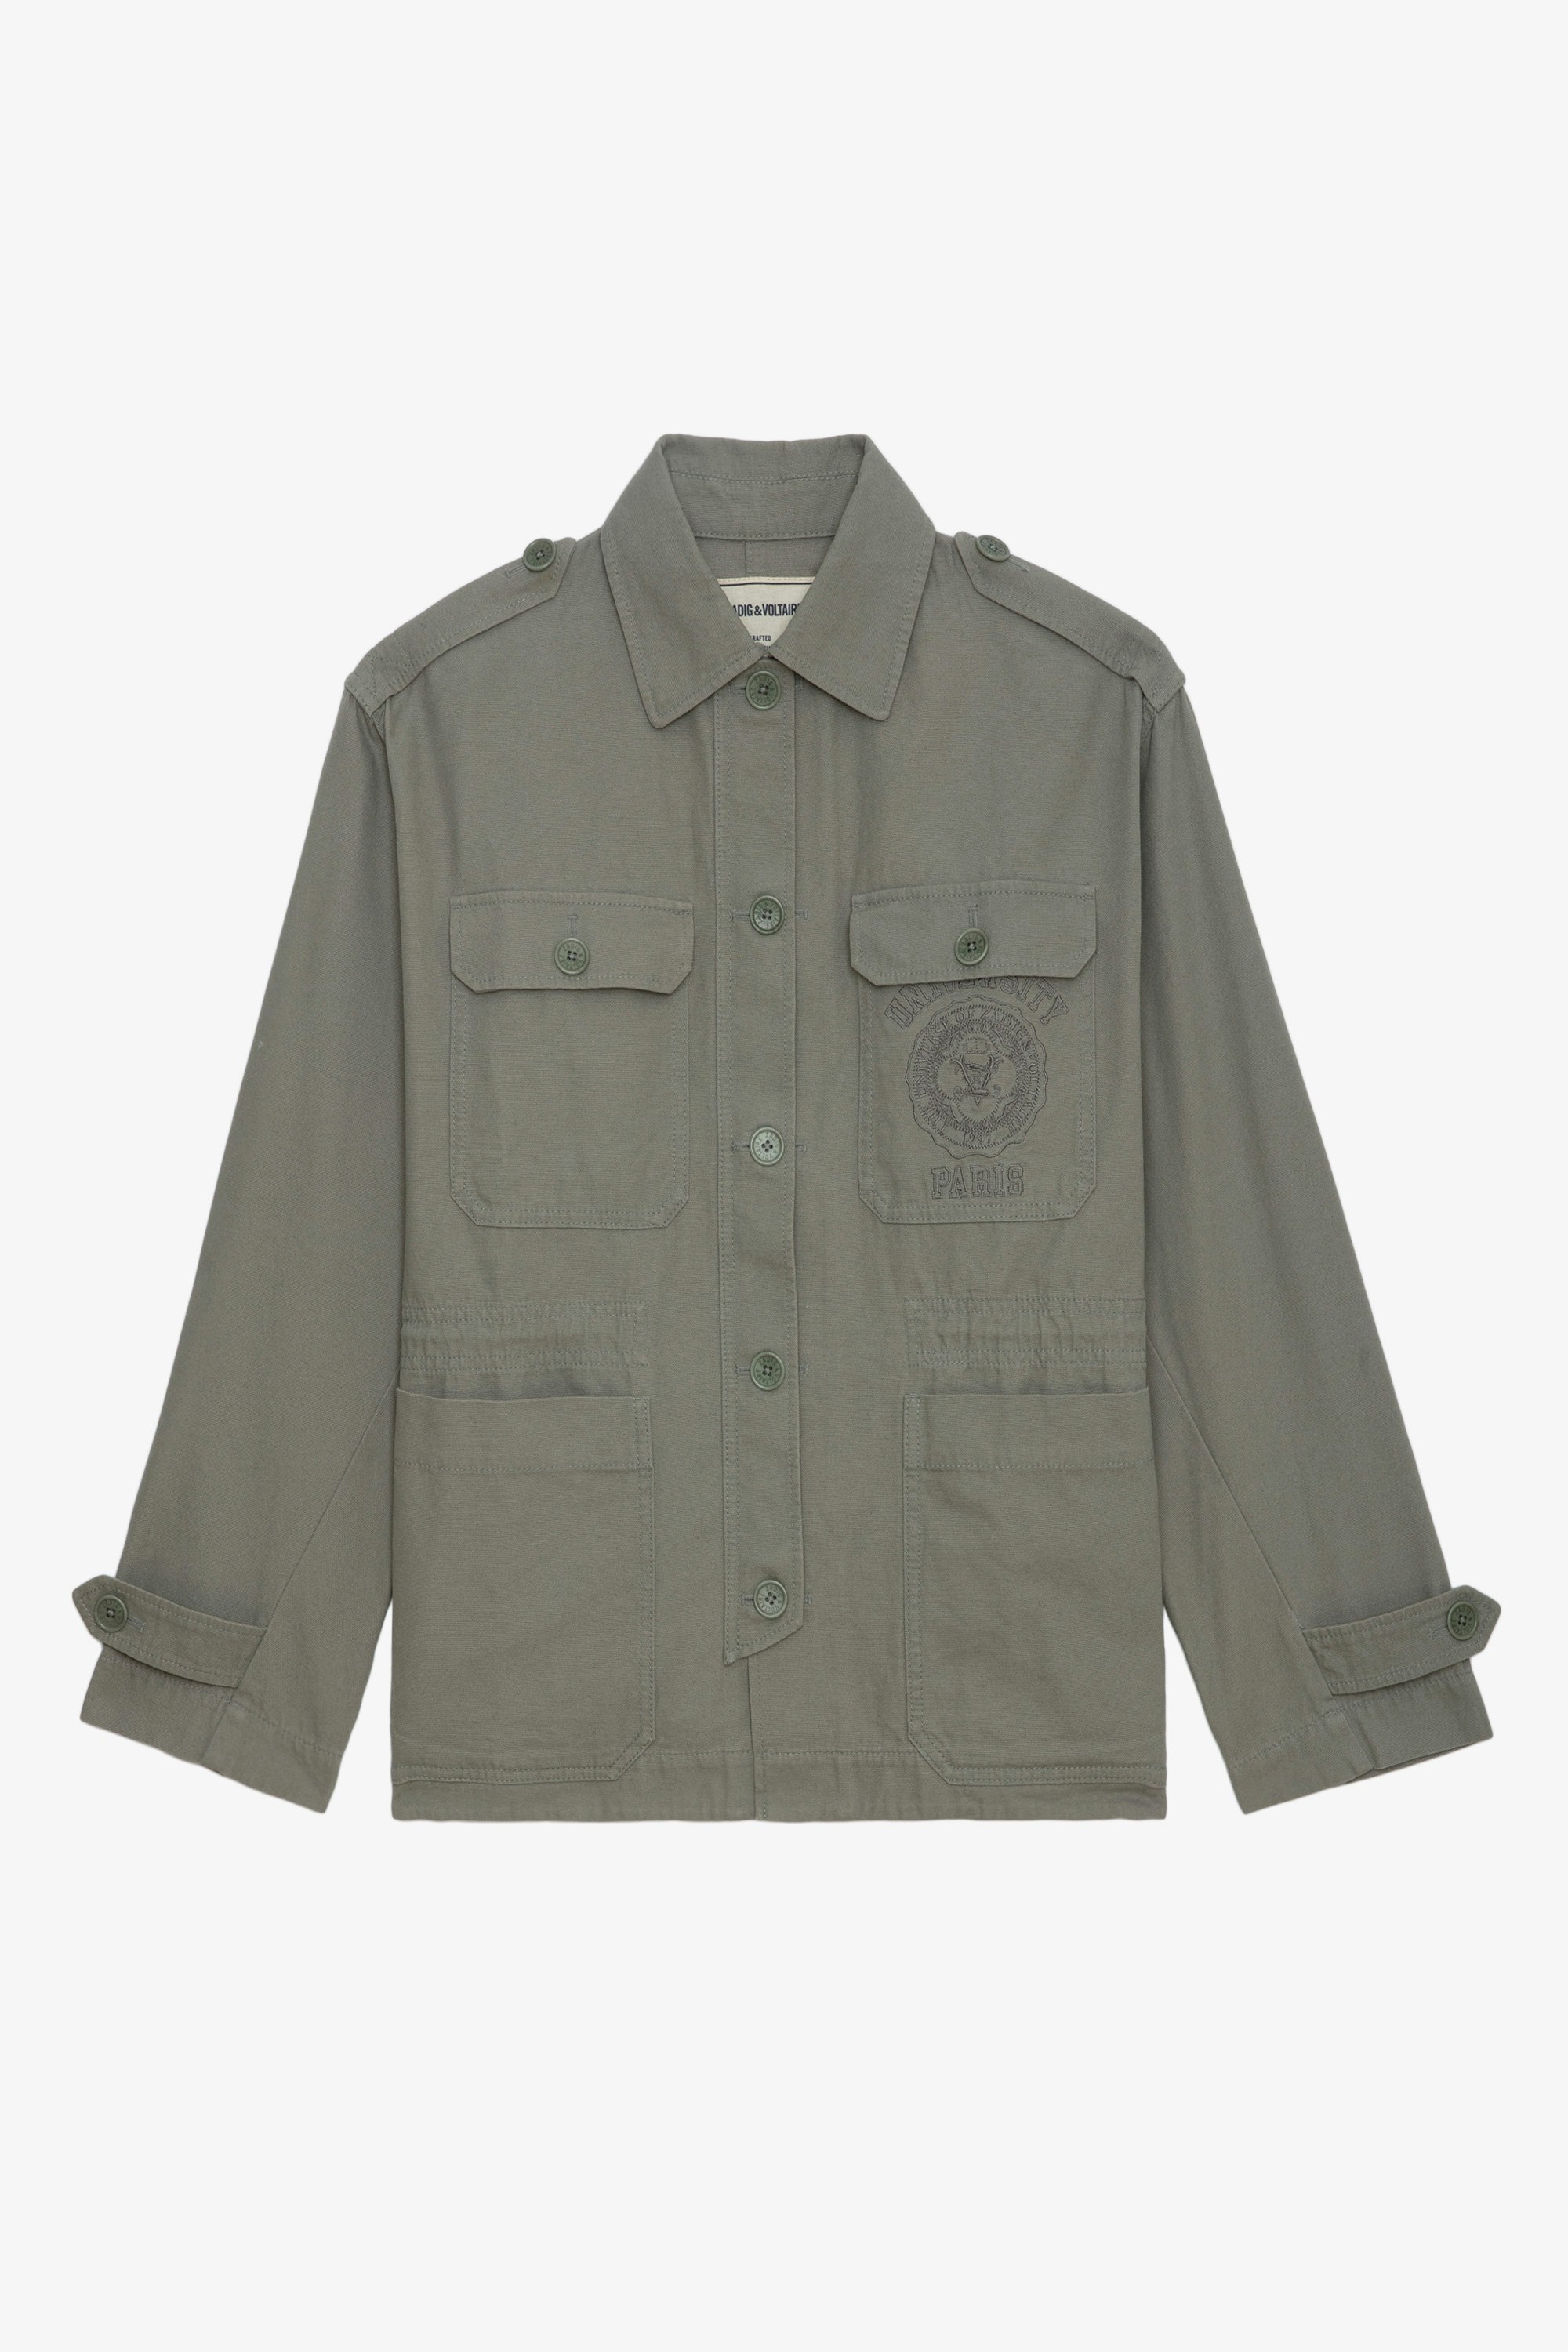 Chaqueta Kemi - Parka militar corta de estilo oversize en color caqui con bolsillos y bordado de estilo universitario.